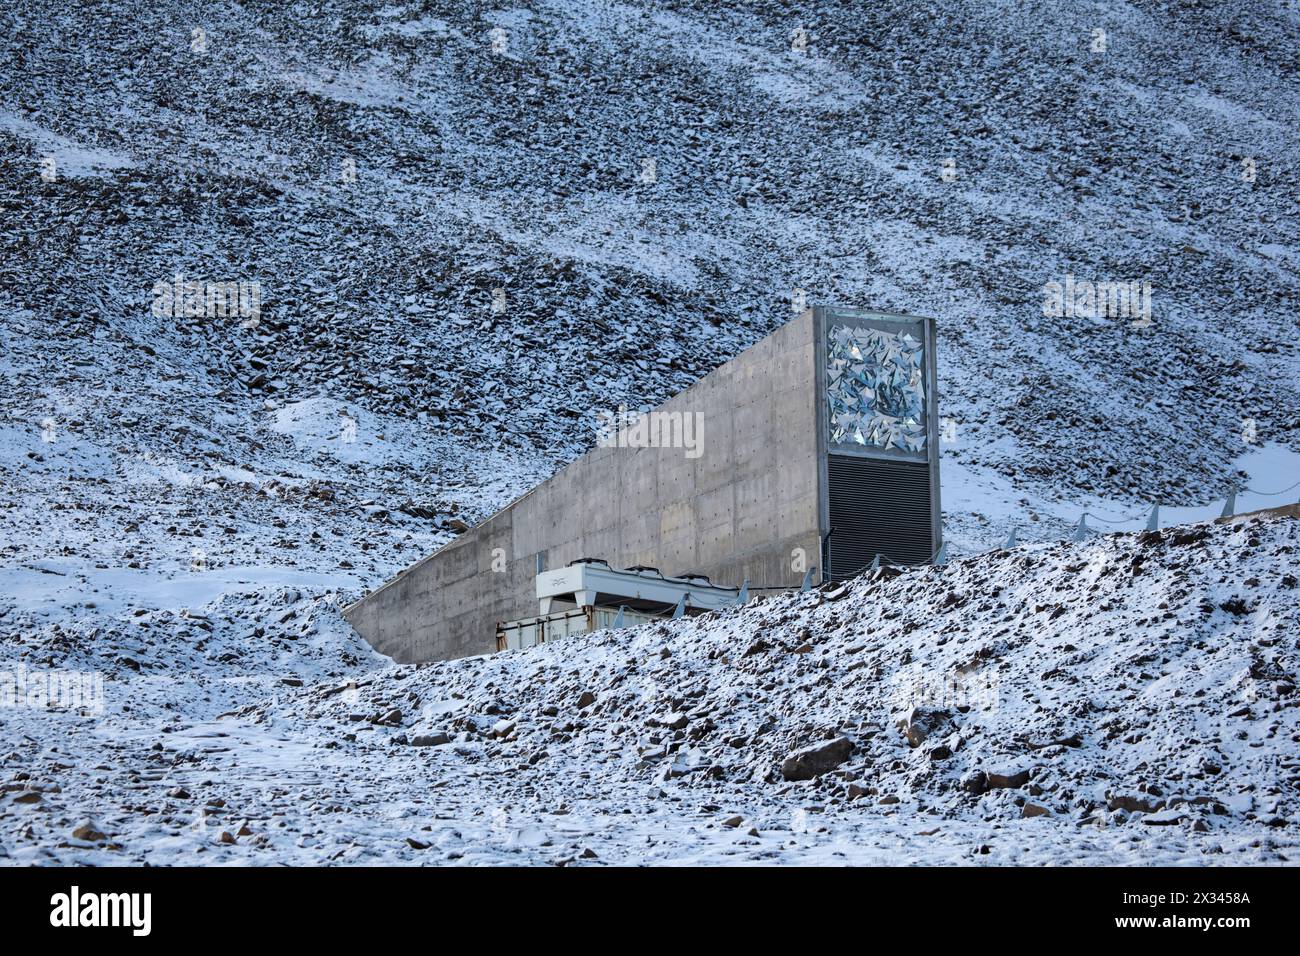 Eingebettet in die felsige Wüste des Plataberget Mountain um Svalbards Flughafen, ist das Global Seed Vault gleichzeitig erschreckend und unschuldig. Entwickelt von einem Stockfoto